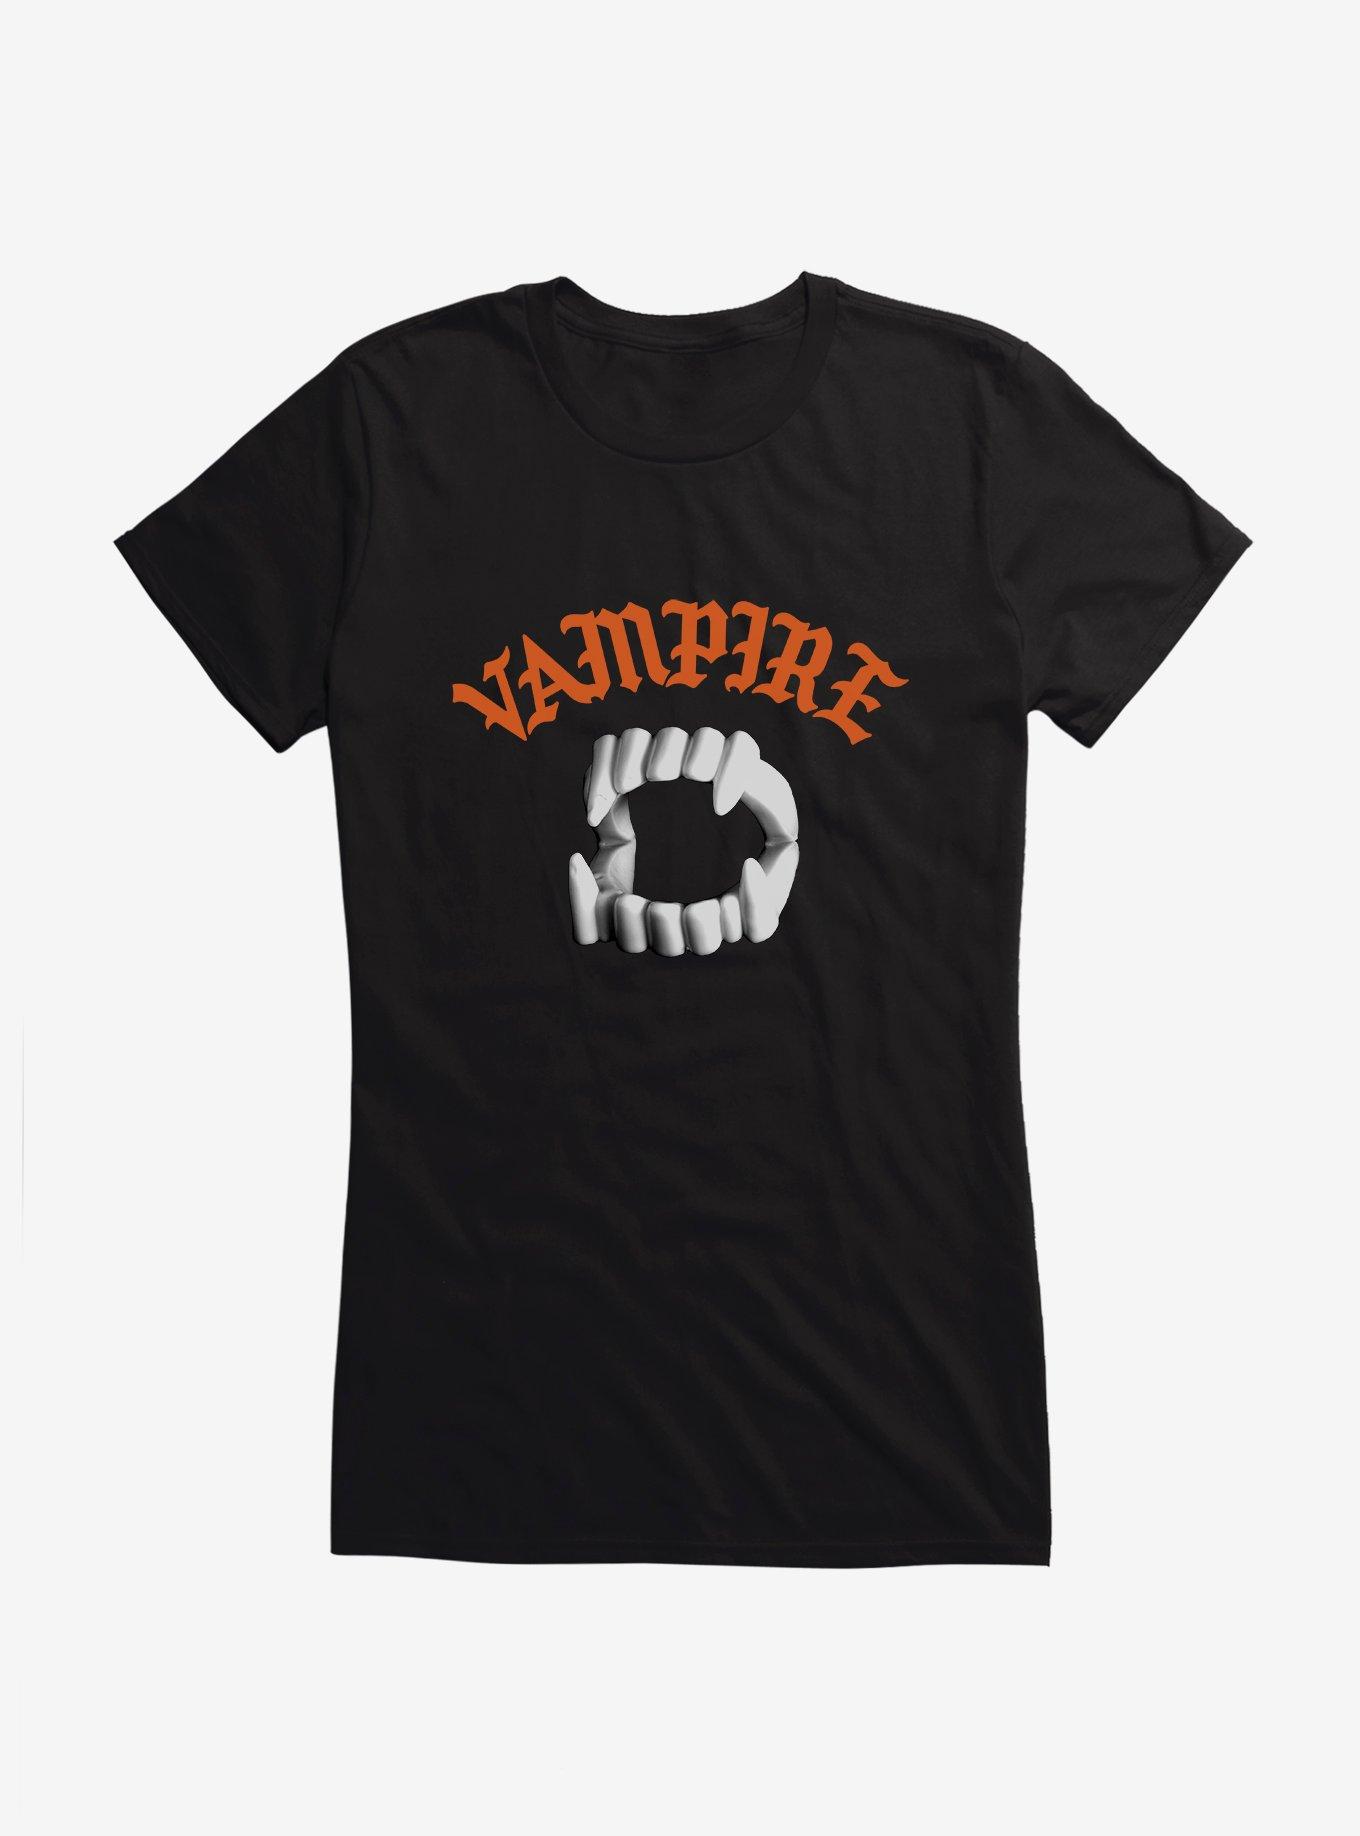 Hot Topic Vampire Teeth Girls T-Shirt, BLACK, hi-res